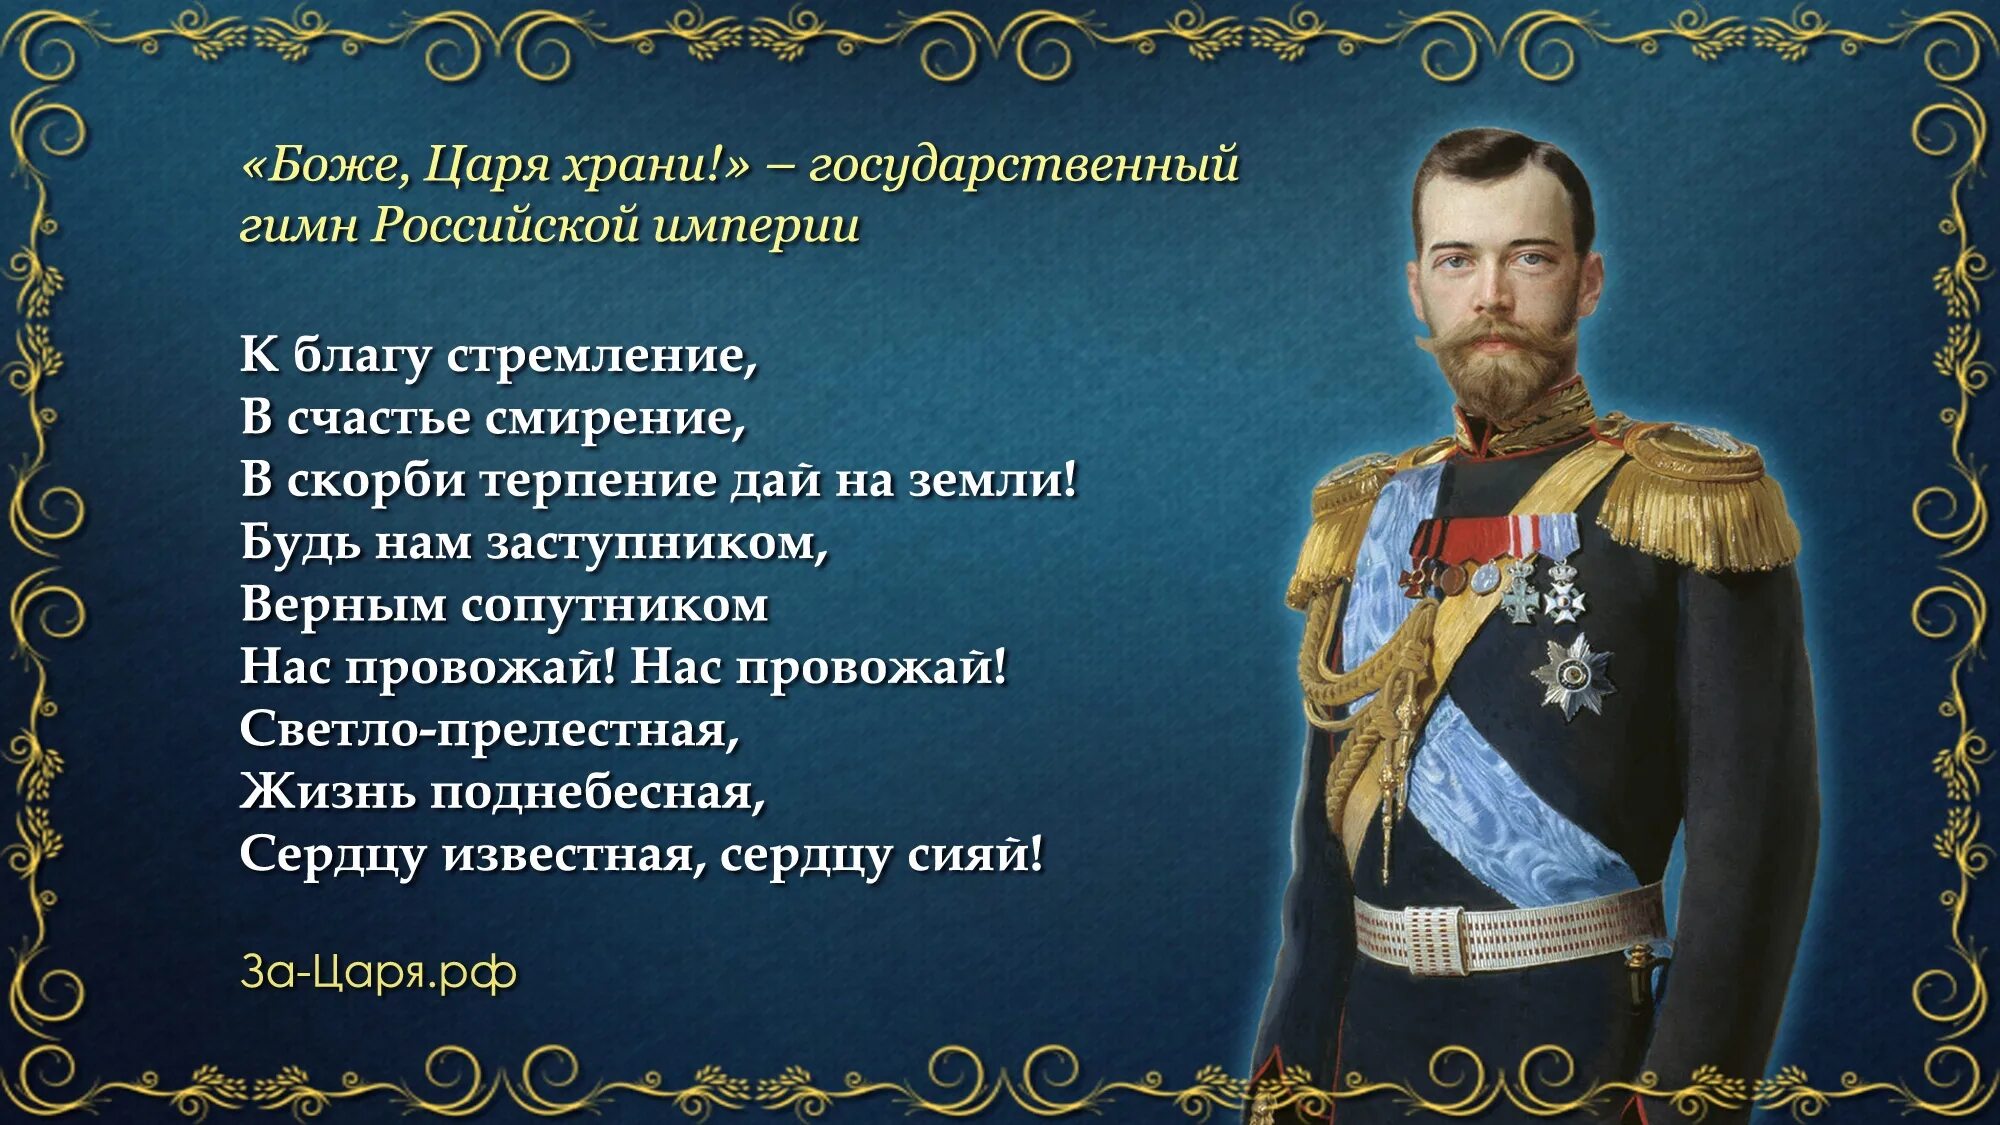 Боже царя храни. Гимн Российской империи.